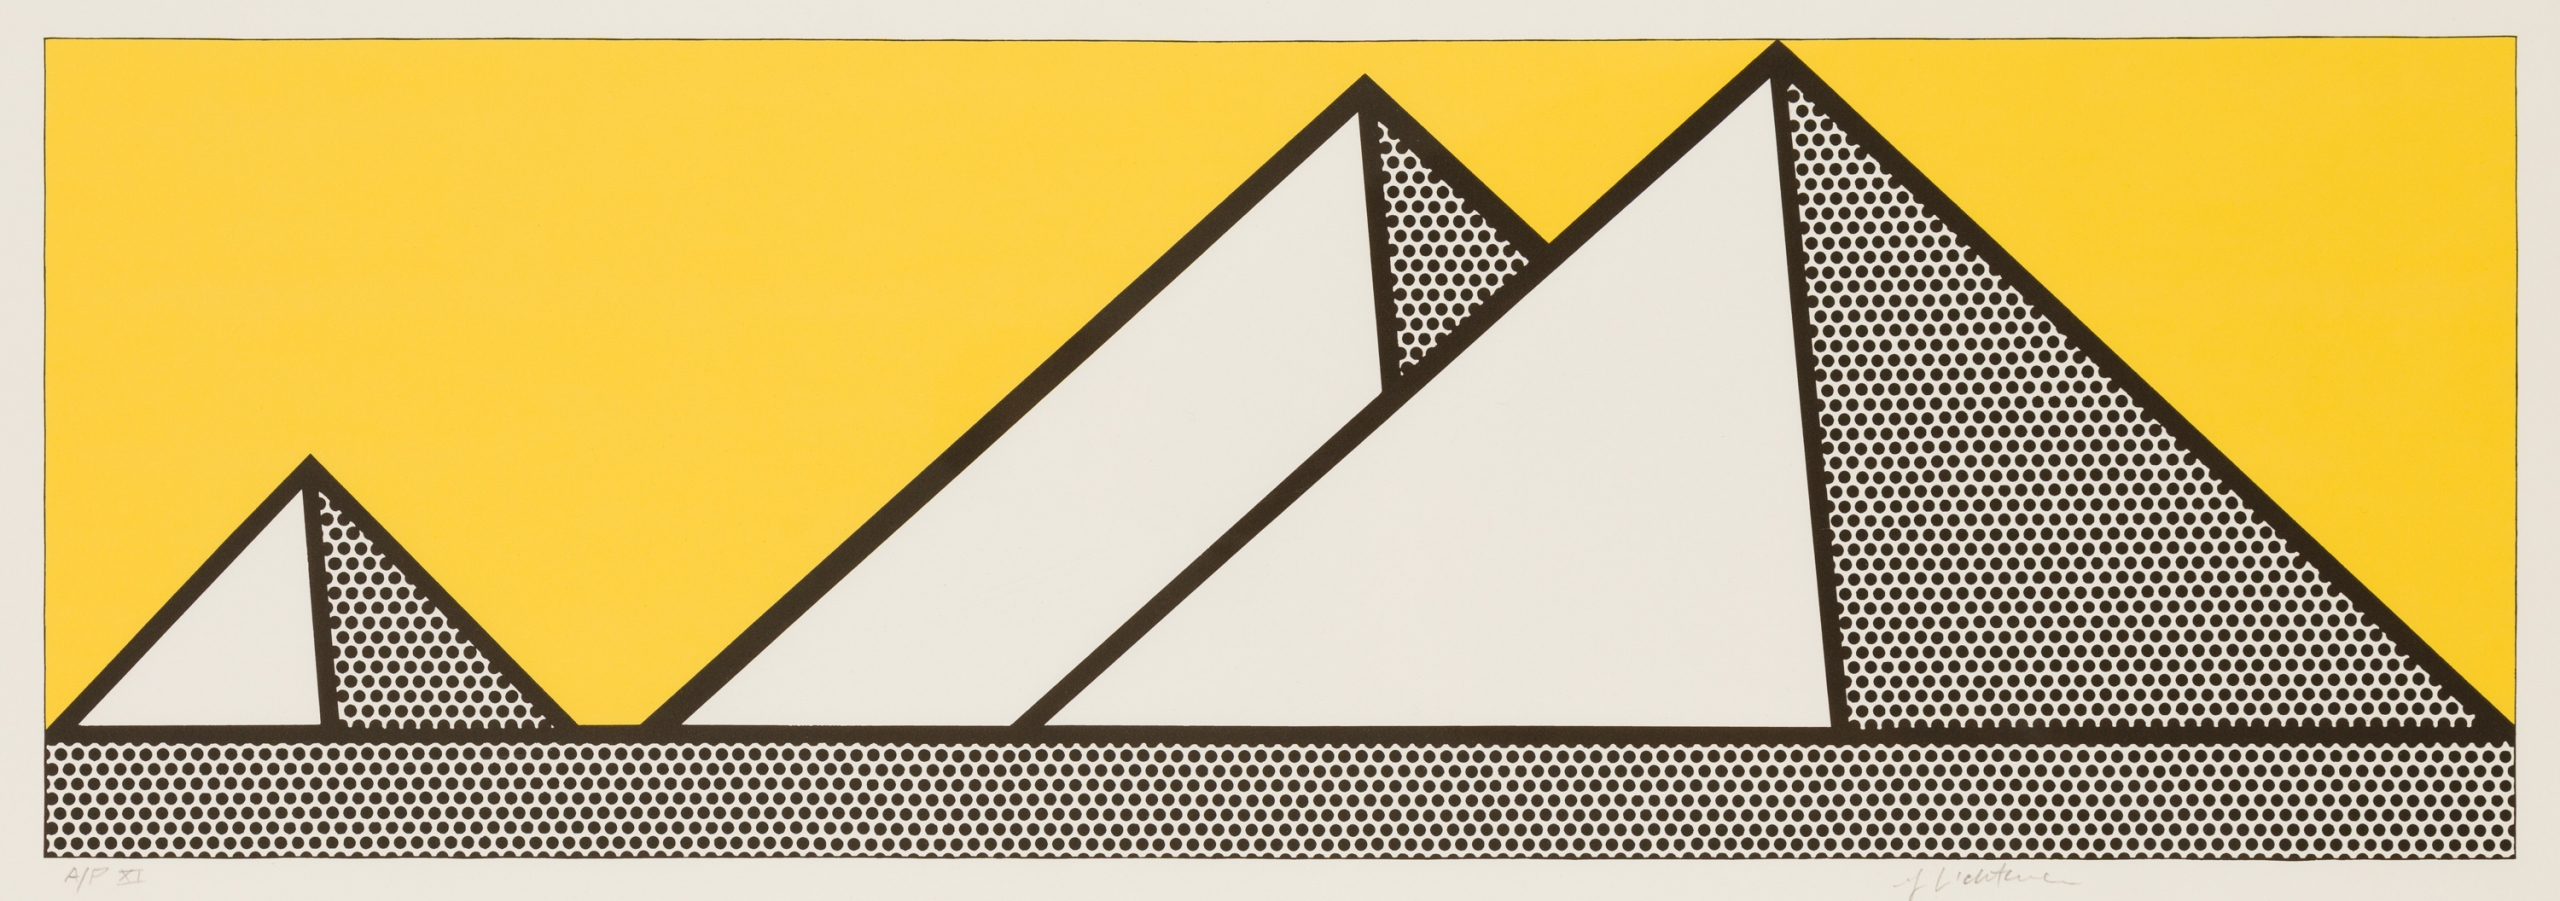 Roy Lichtenstein, Pyramides